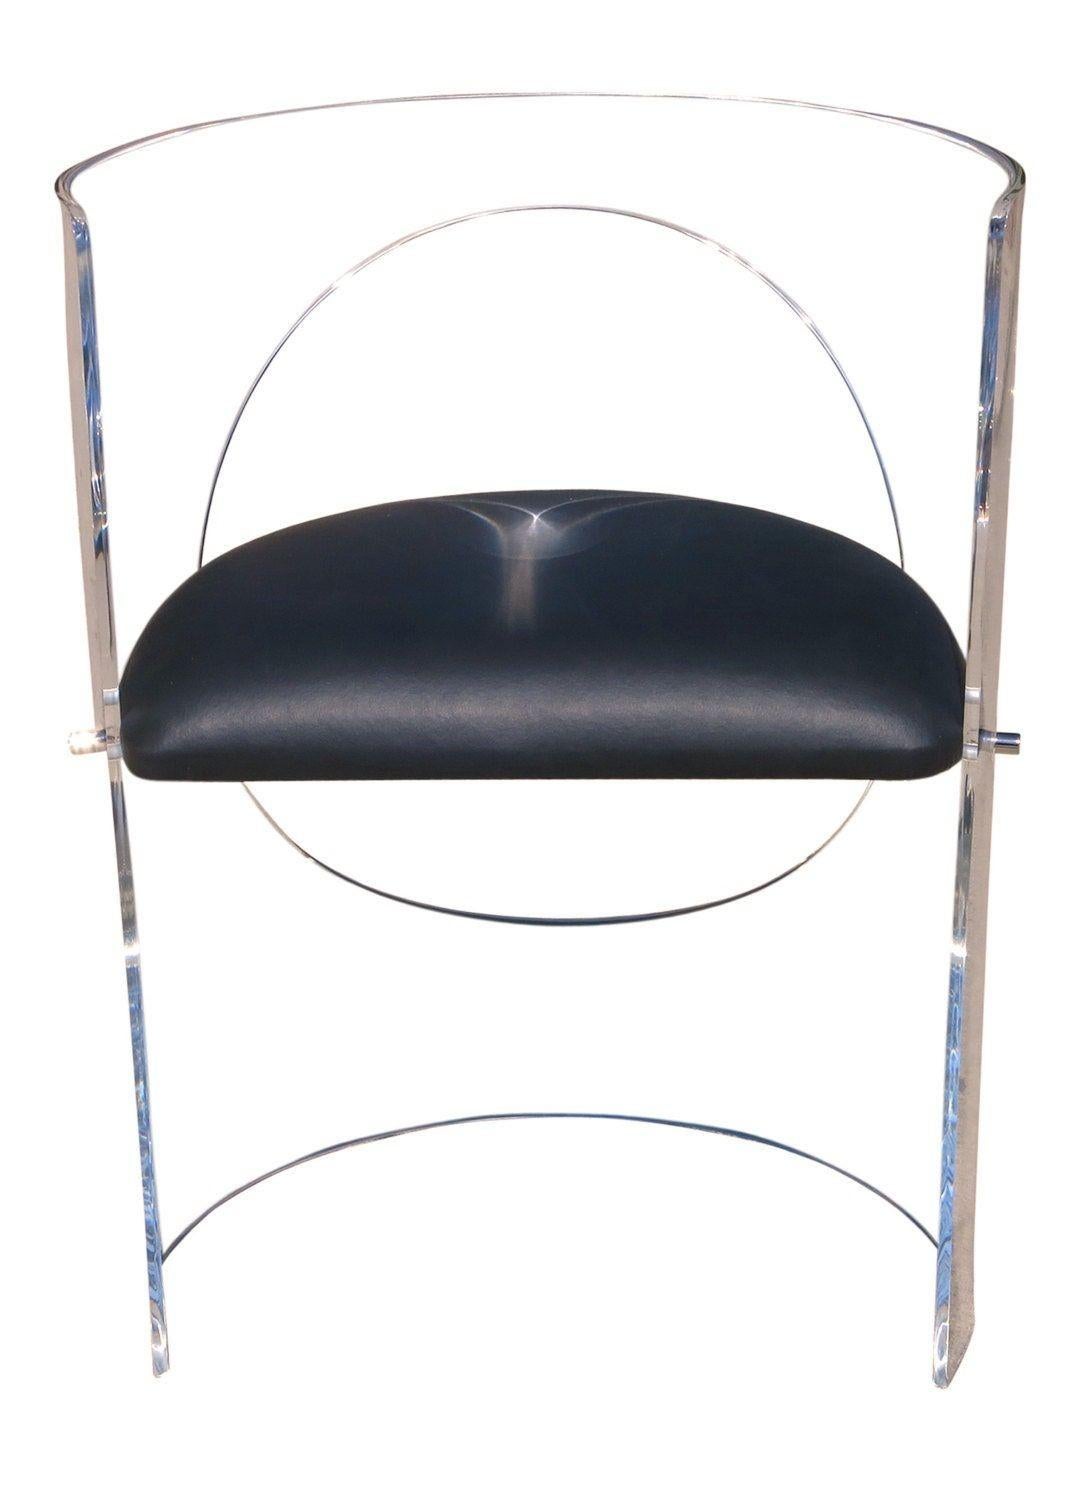 Ces fauteuils au design moderne du milieu du siècle dernier, conçus par le célèbre designer Charles Hollis Jones, sont dotés de cadres en Lucite qui vous enveloppent lorsque vous êtes assis sur un siège flottant en vinyle noir.

Ces chaises sont